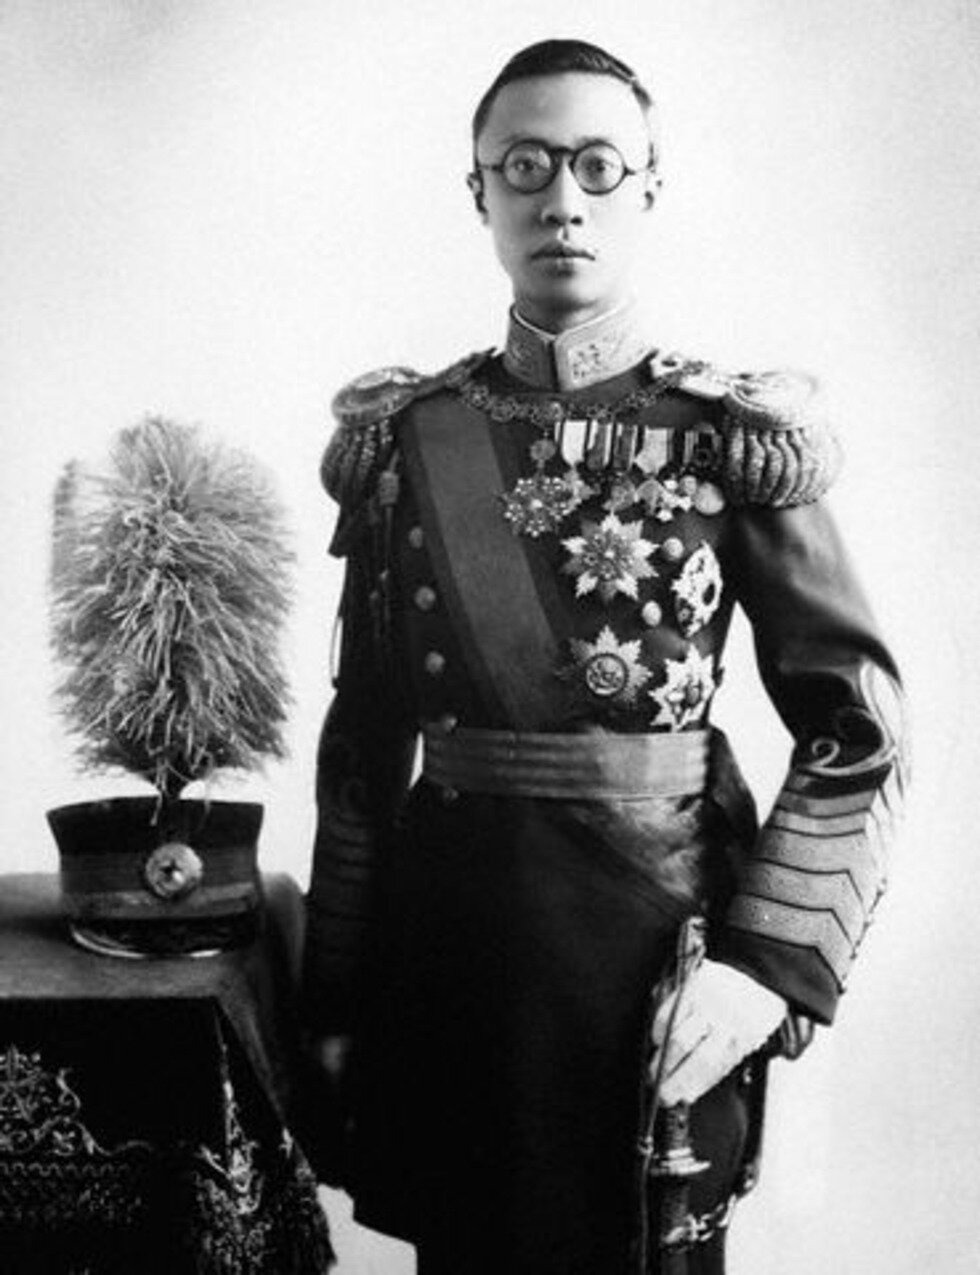 Zdjęcie przedstawia mężczyznę o azjatyckiej urodzie. Ma krótkie włosy oraz okulary w ciemnych oprawkach. Ubrany jest w mundur pełen medali i orderów. Trzyma w ręku szablę.